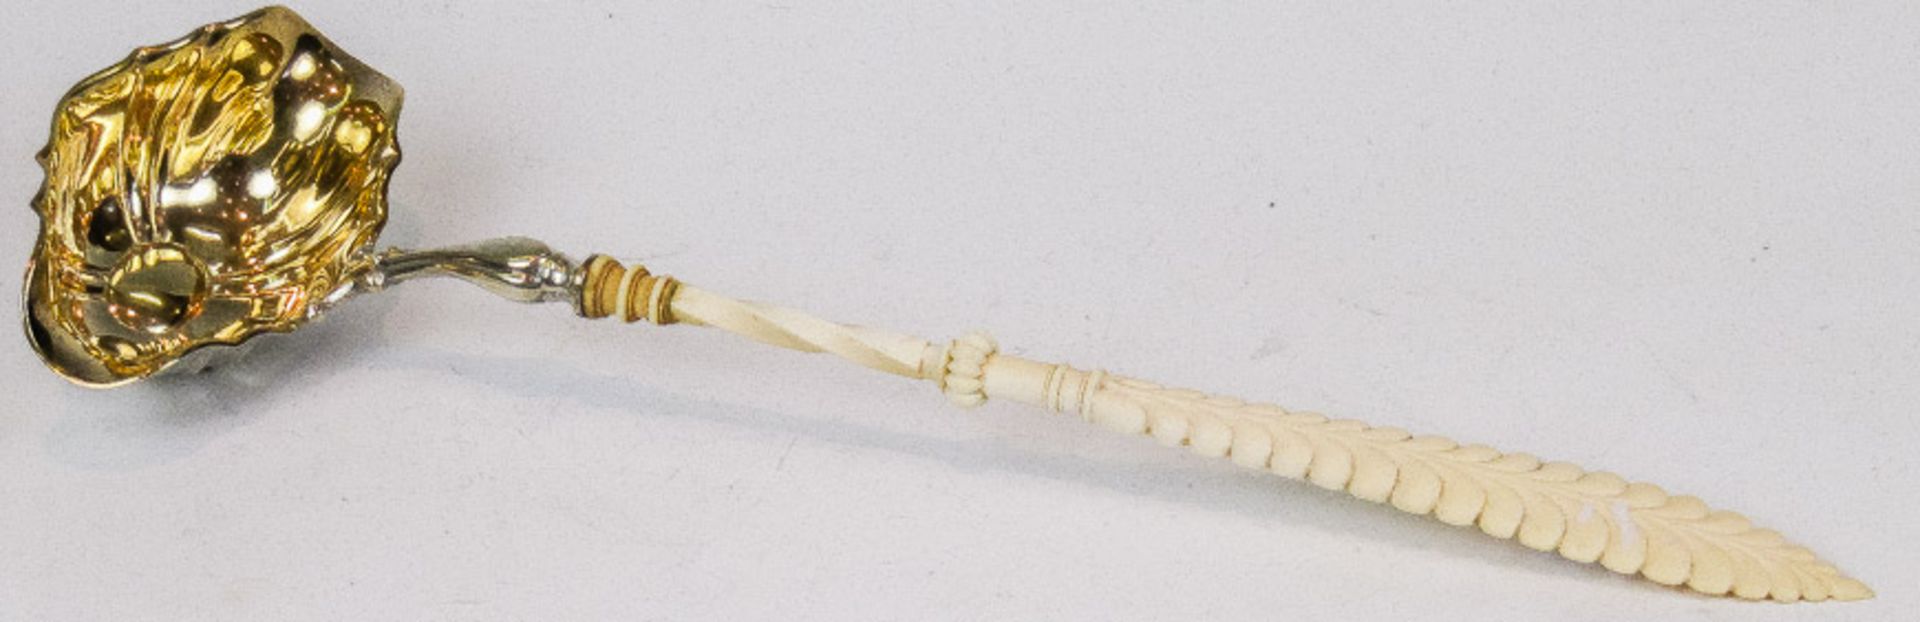 Bowlenschöpferum 1840Zweites Rokoko. Mit geschnitztem Elfenbeingriff. Vergoldete Muschellaffe mit